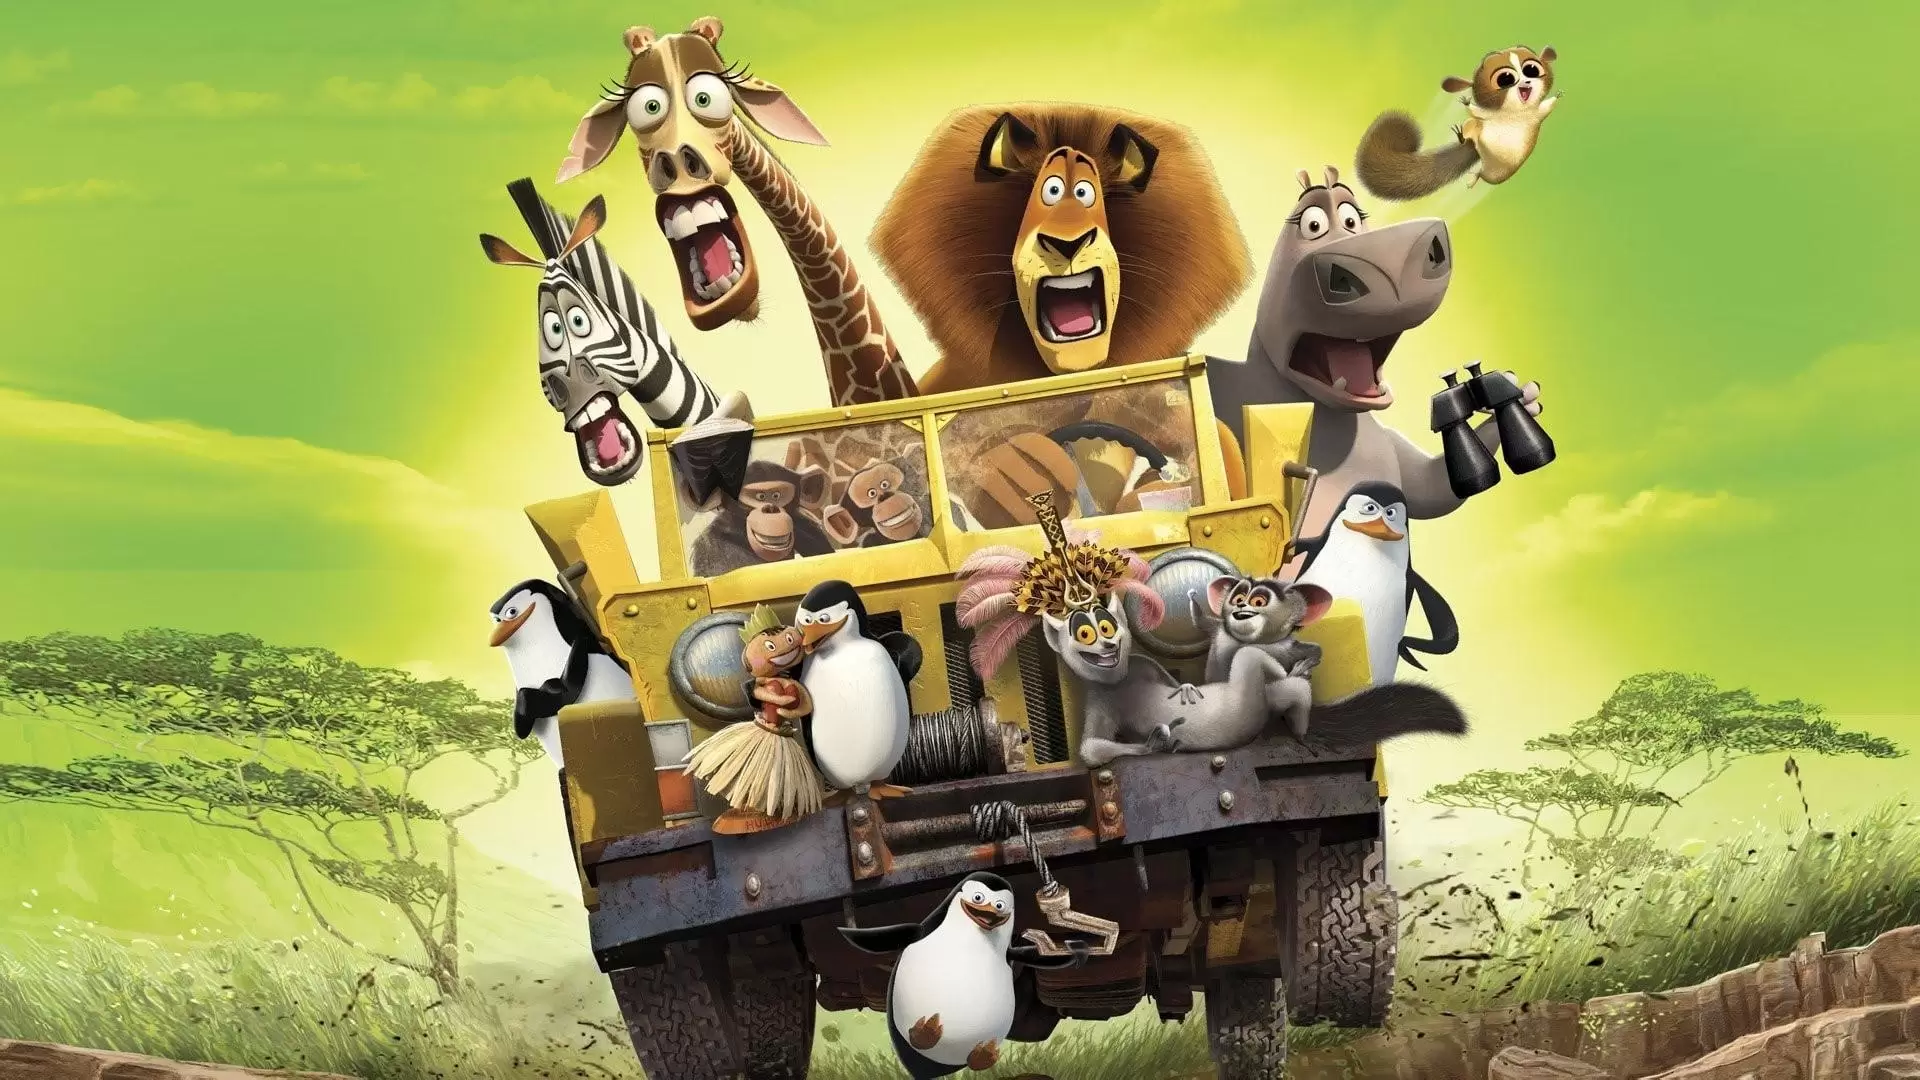 دانلود انیمیشن Madagascar: Escape 2 Africa 2008 (ماداگاسکار : فرار به آفریقا) با زیرنویس فارسی و تماشای آنلاین